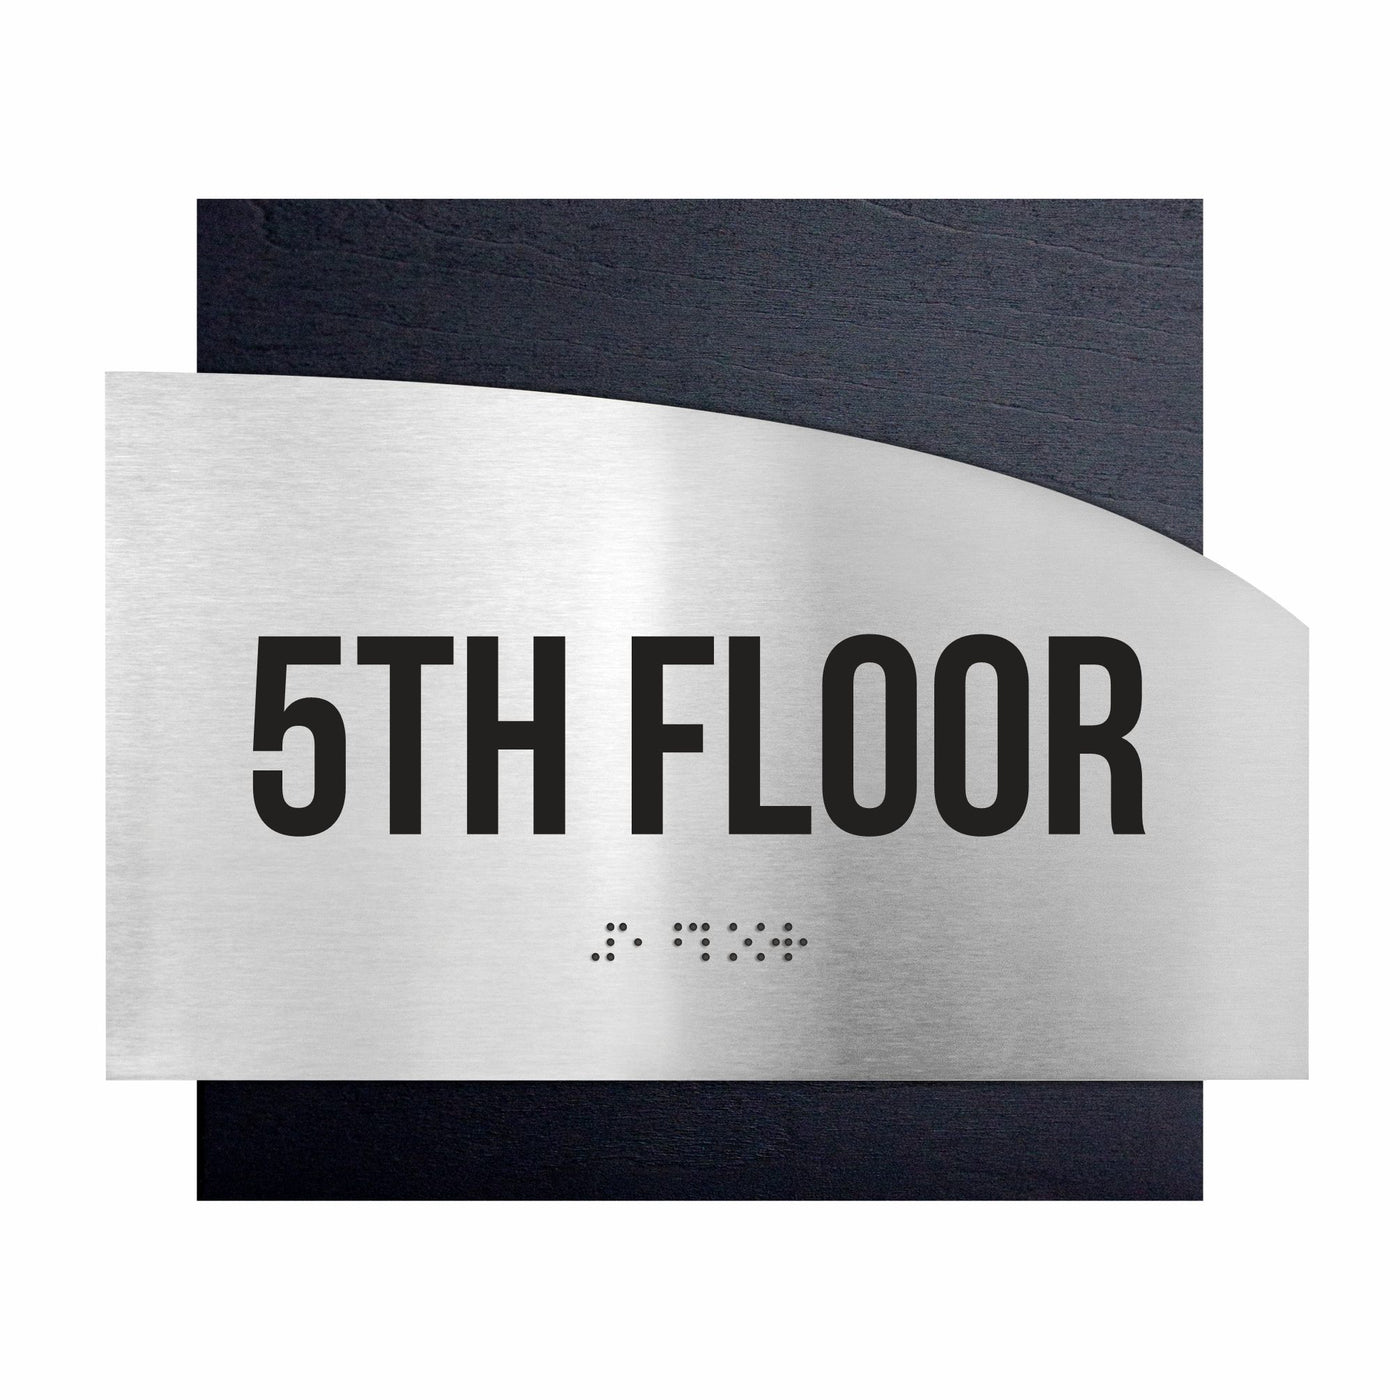 Floor Signs - Steel Sign For 5s Floor "Wave" Design